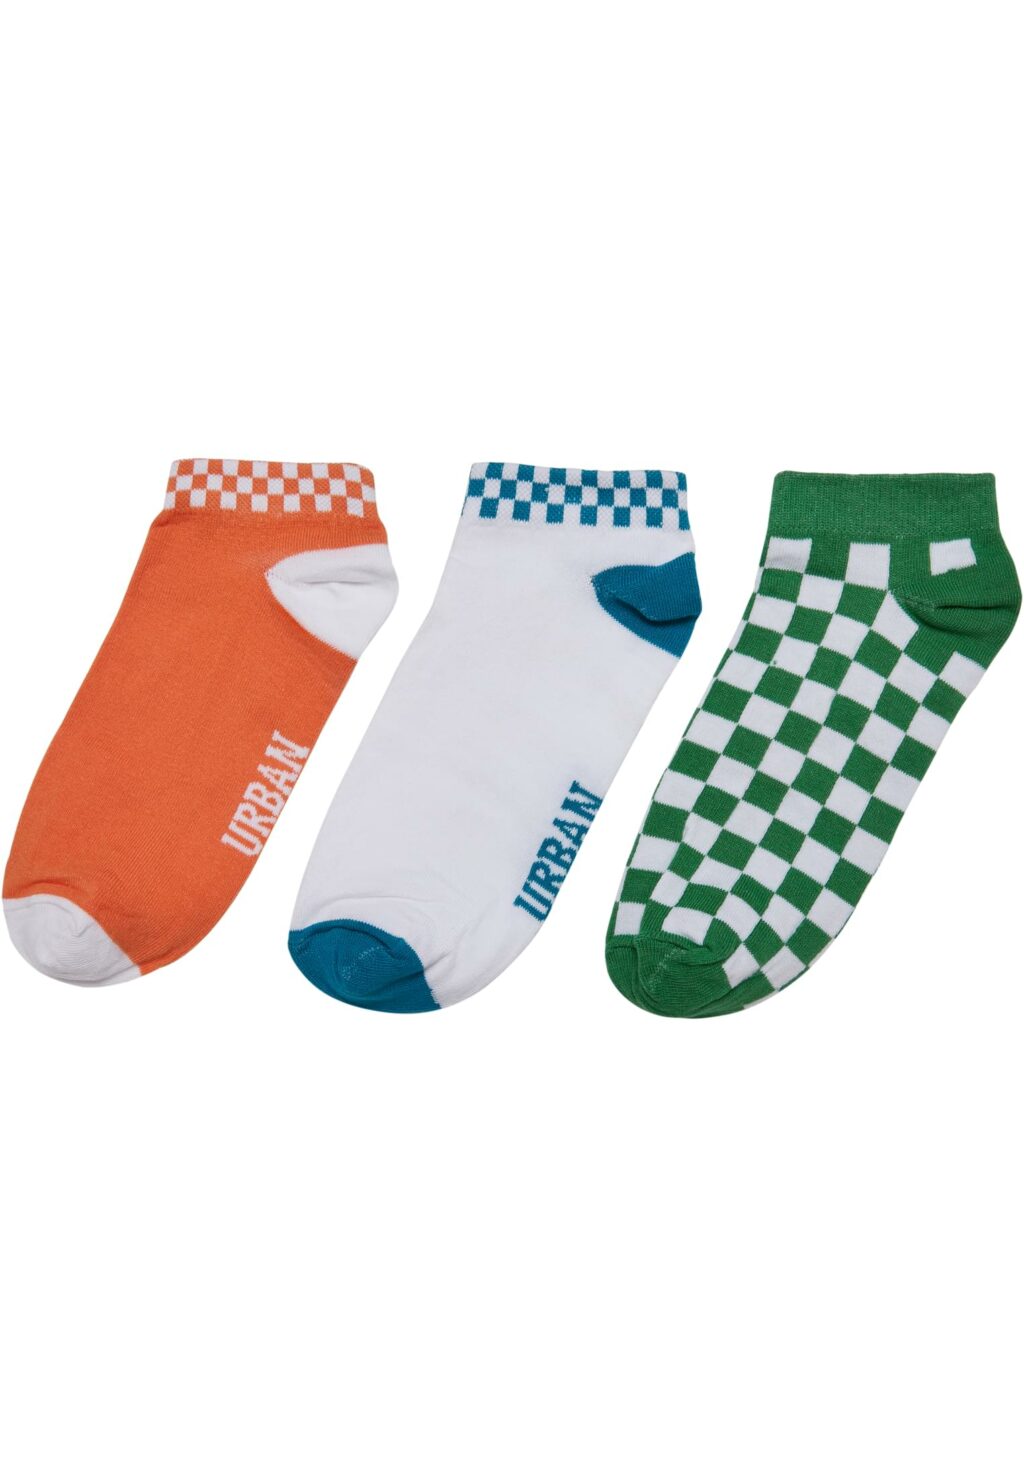 Sneaker Socks Checks 3-Pack orange/green/teal TB3387